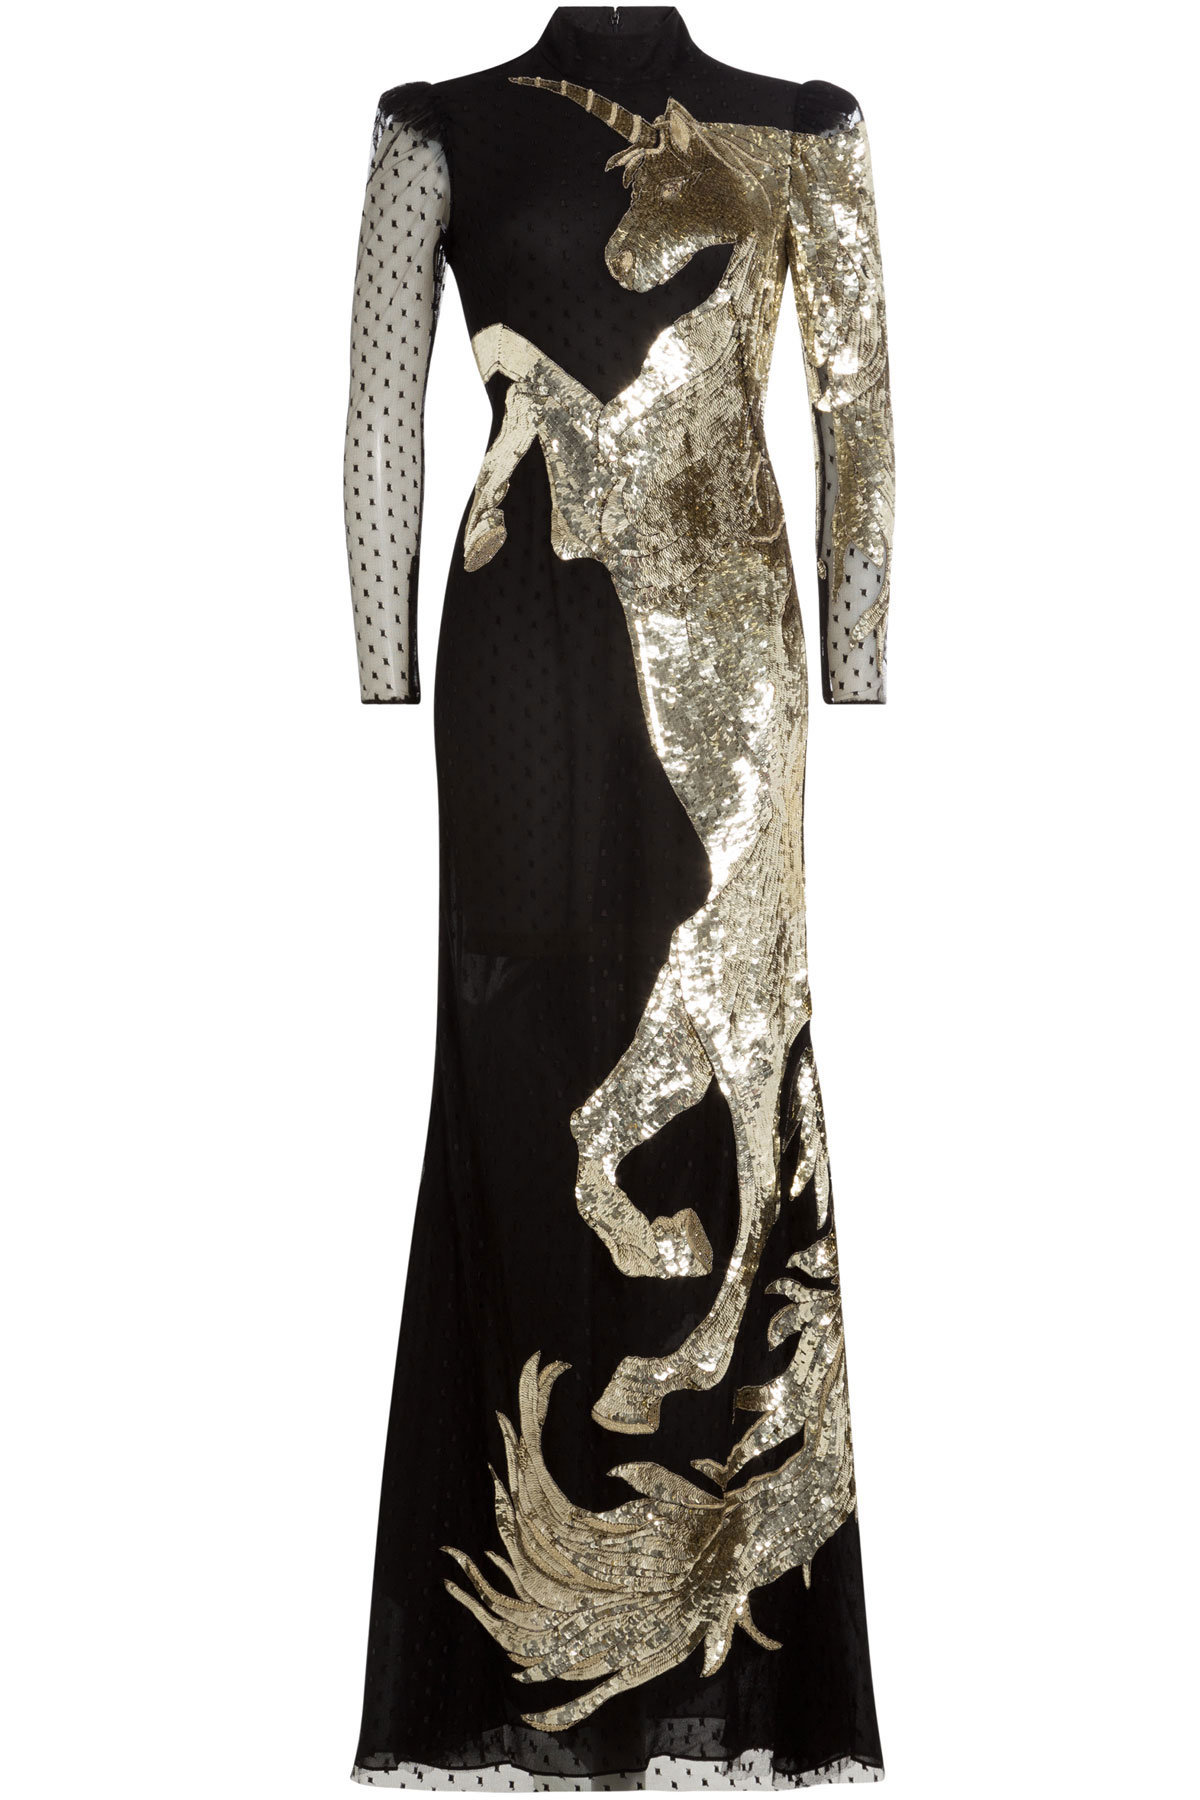 Alexander McQueen Embellished Floor Length Gown black gold sequin